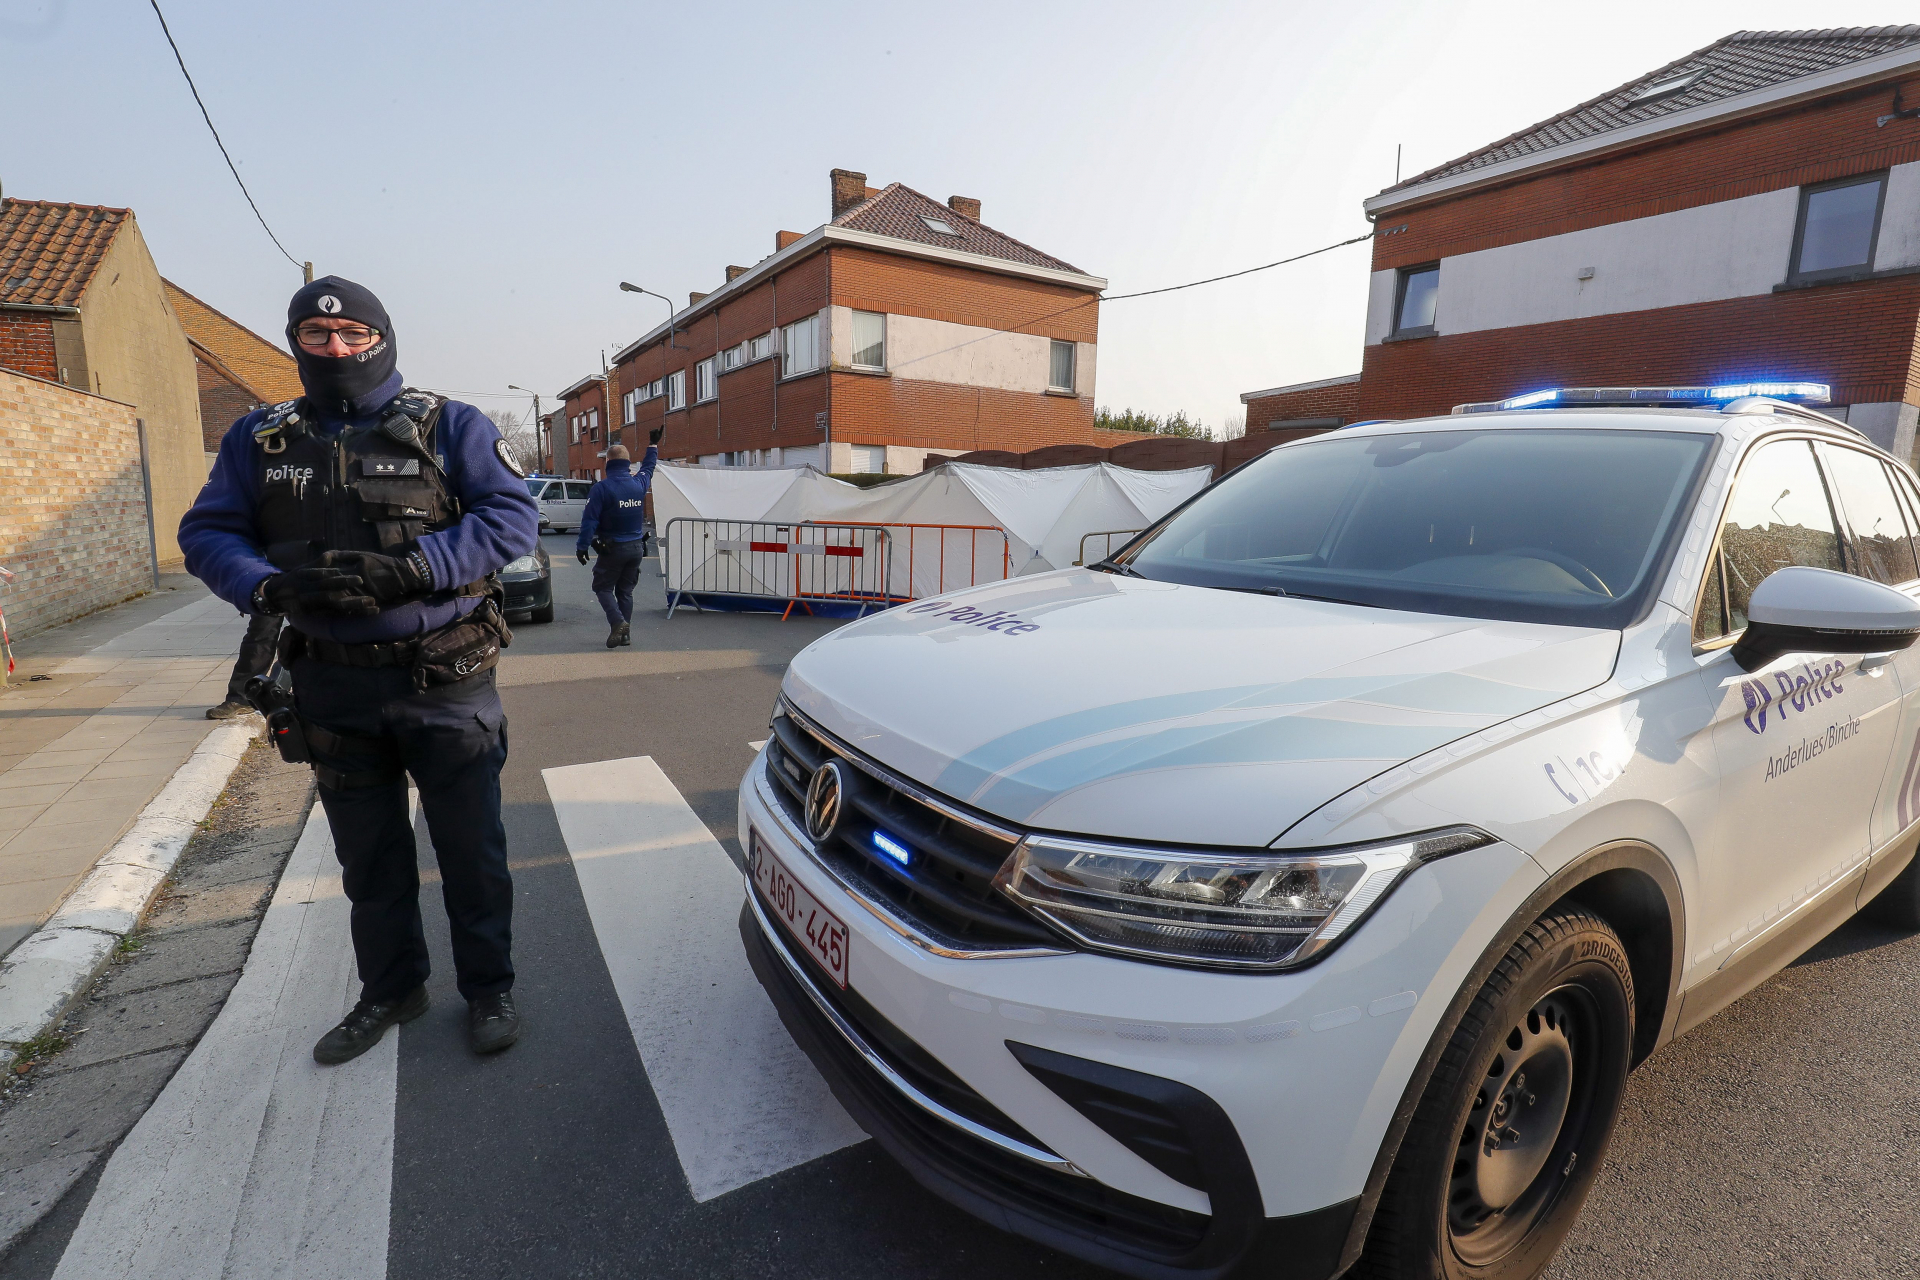 Извънредно: Кола се вряза в карнавал в Белгия, има загинали СНИМКИ 18+